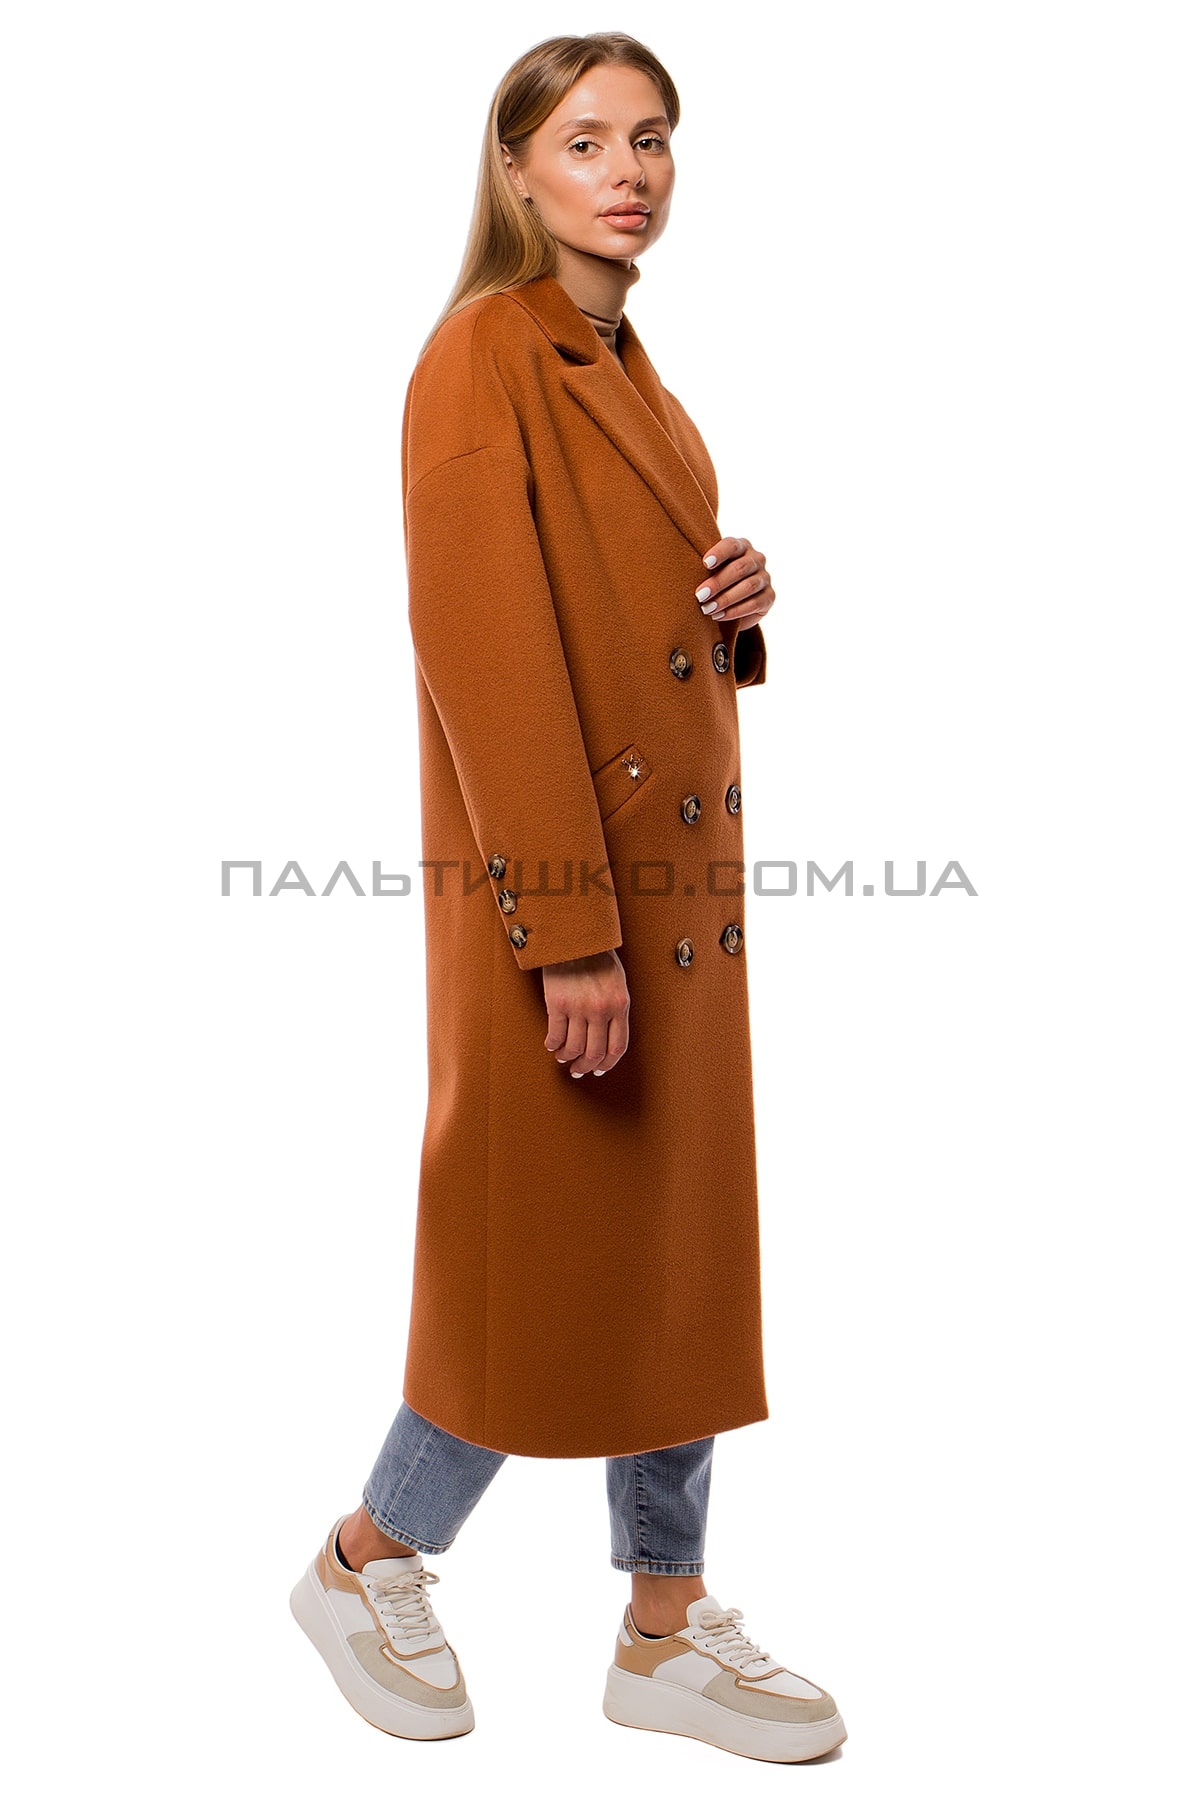  Жіноче коричневе пальто